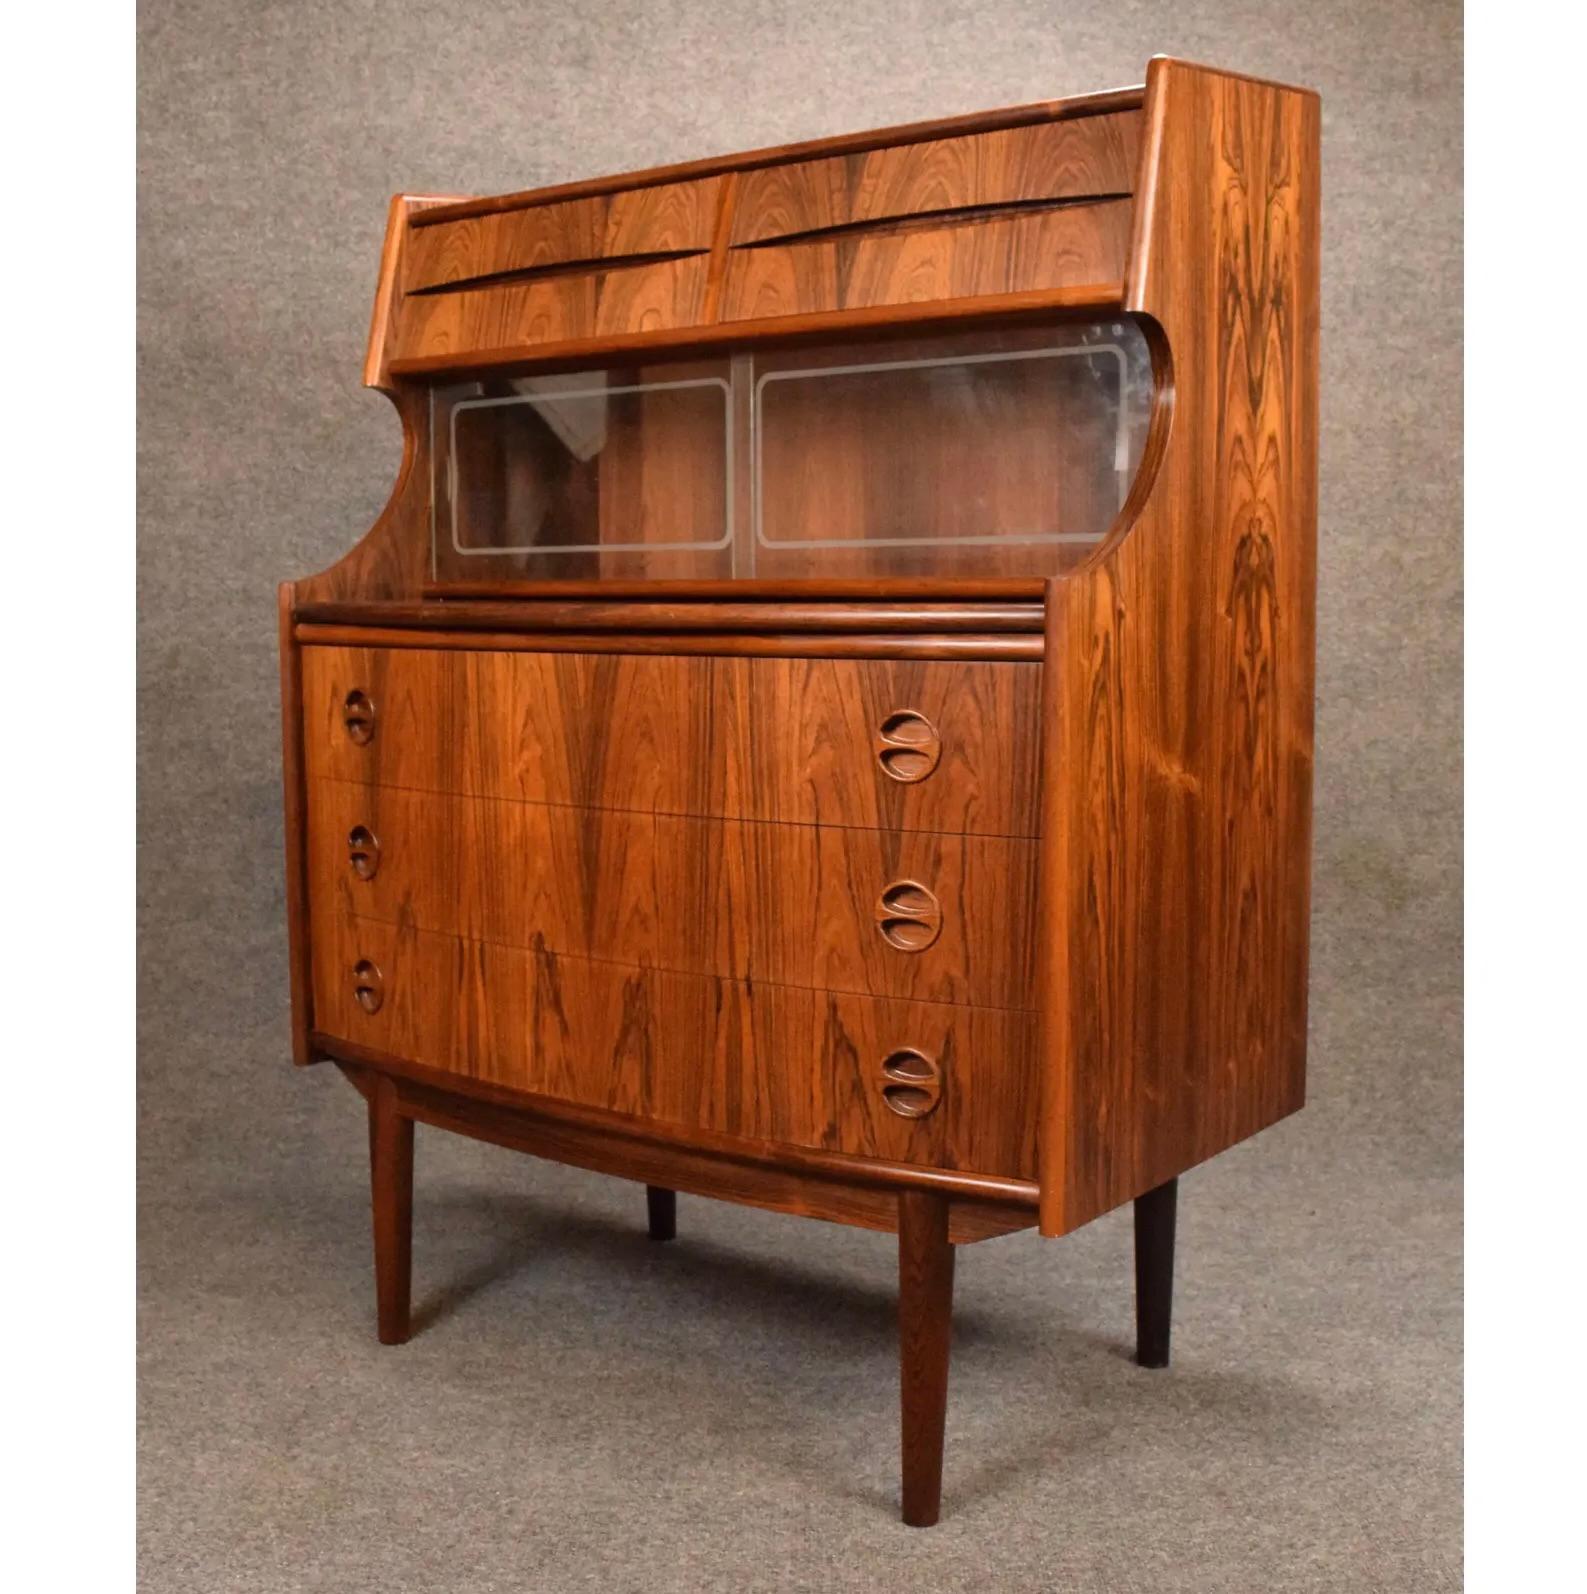 Vintage Danish Mid Century Modern Rosewood Secretary Desk by Falsig Mobler For Sale 2